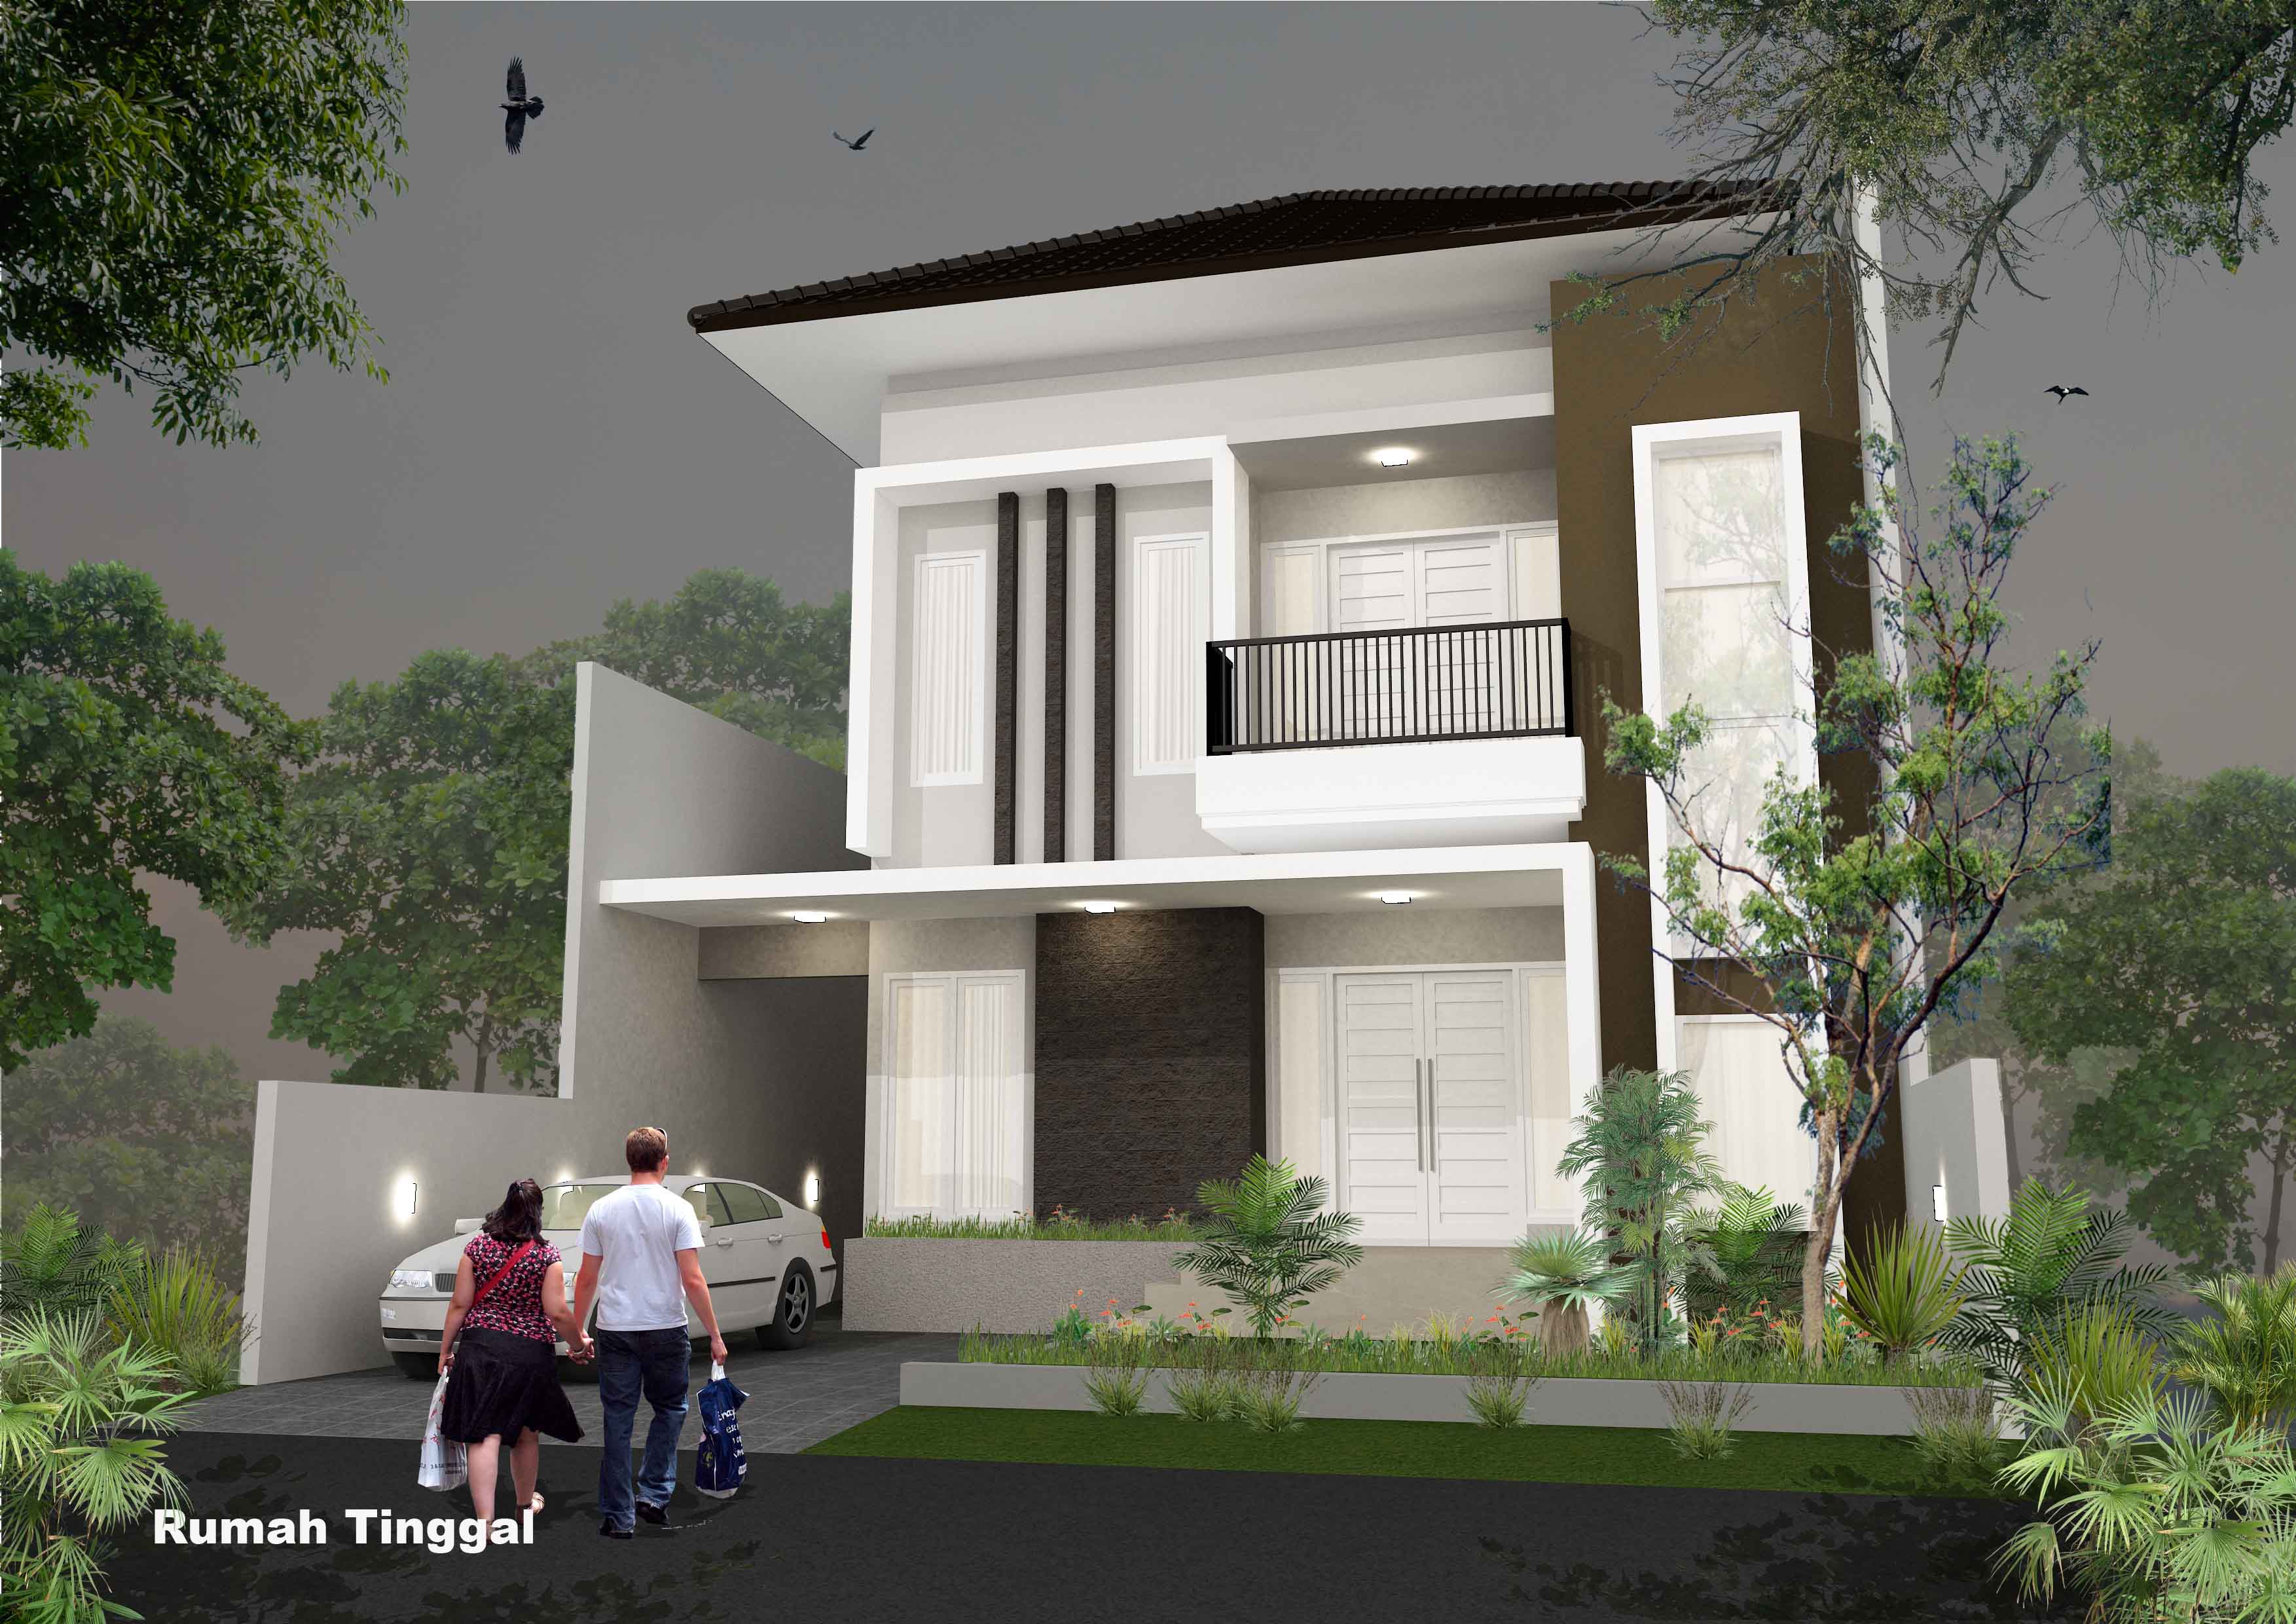 Gambar Rumah Minimalis 2 Lantai Jakarta Desain Rumah Minimalis